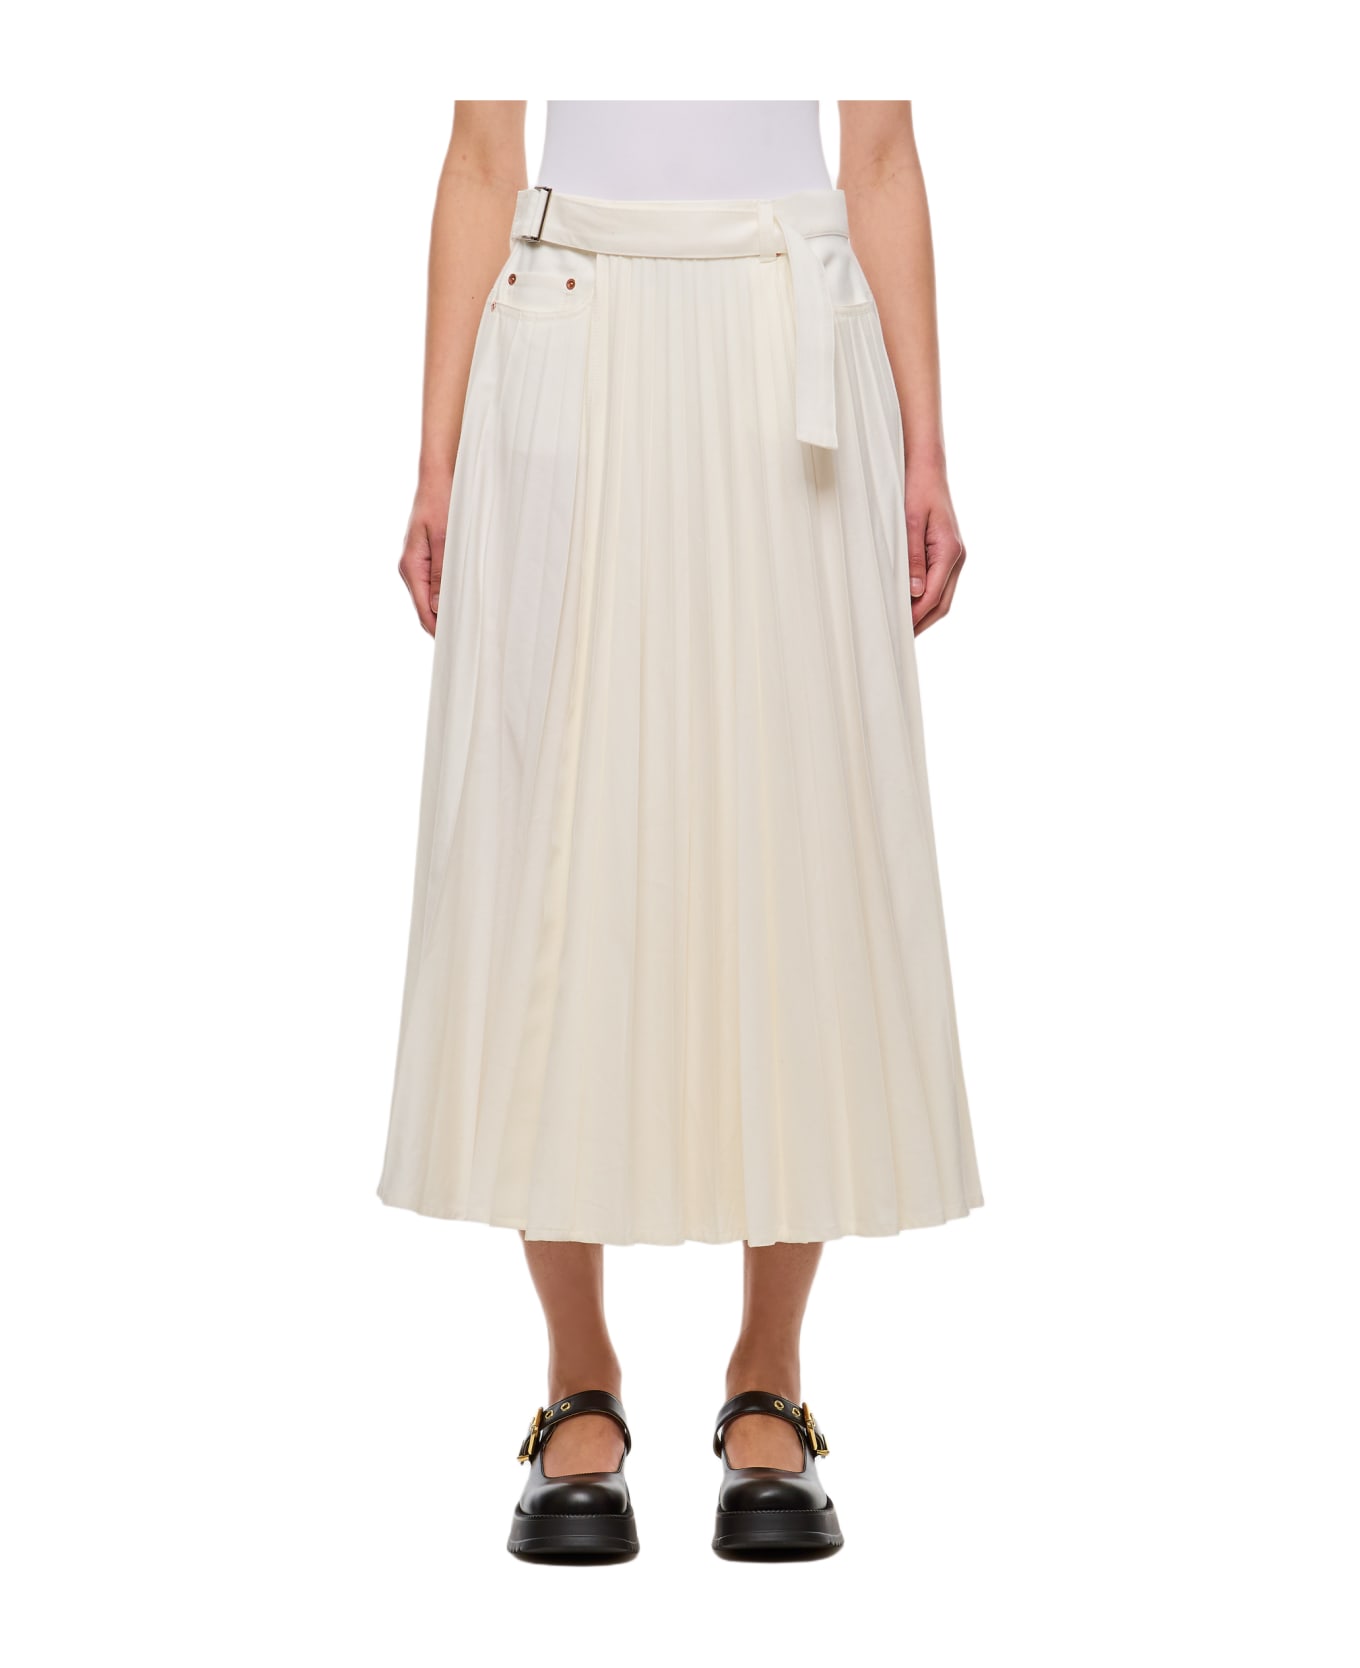 Sacai Denim Skirt - White スカート